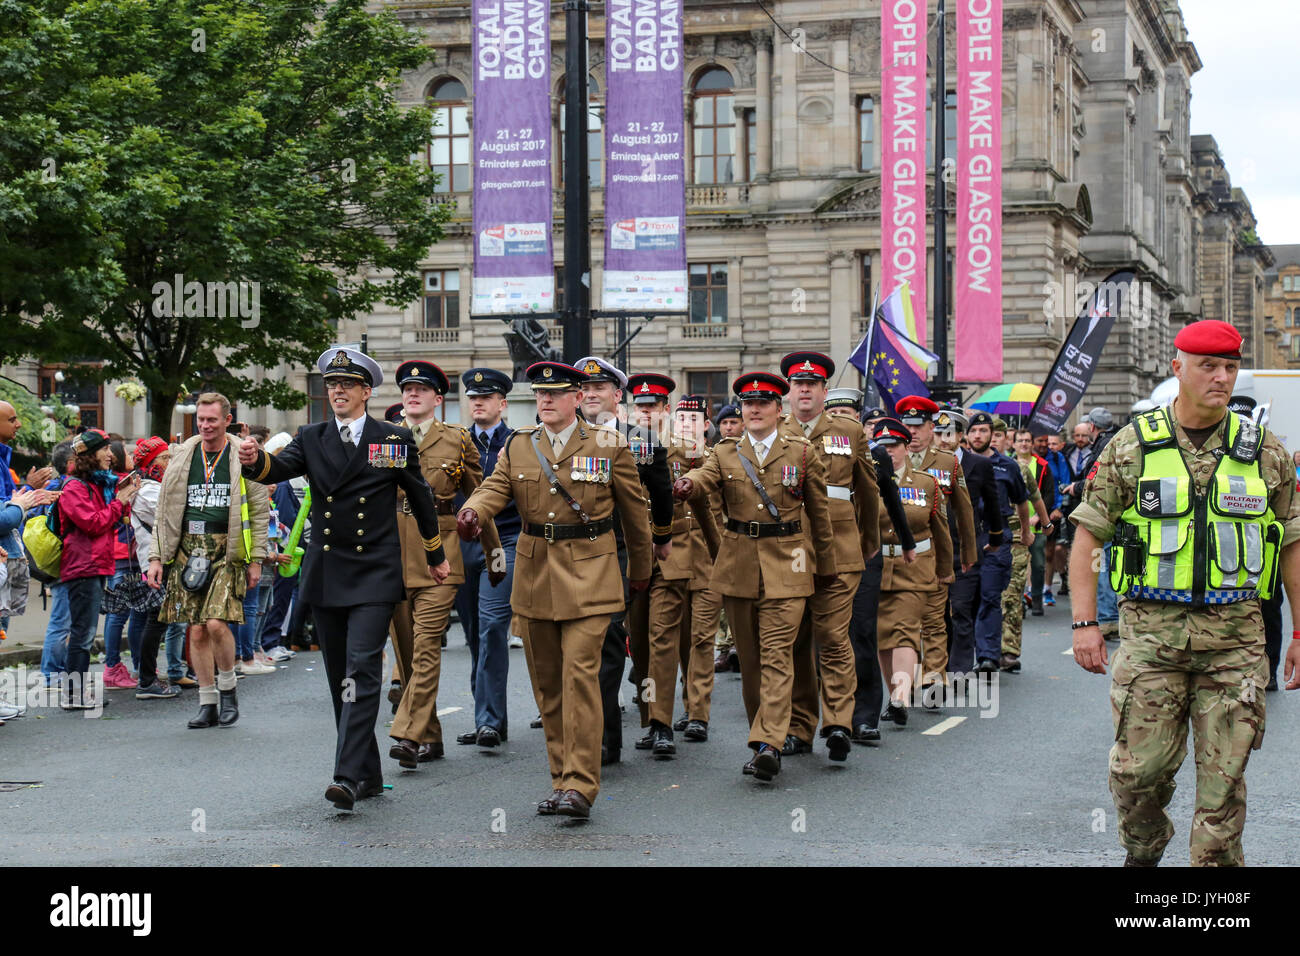 Tausende auf die Straße, in der Gay Pride Parade durch das Zentrum von Glasgow. Hunderte von Unternehmen und gesellschaftlichen Gruppen zeigen ihre Unterstützung für LGBT-Rechte bei der Veranstaltung. Stockfoto